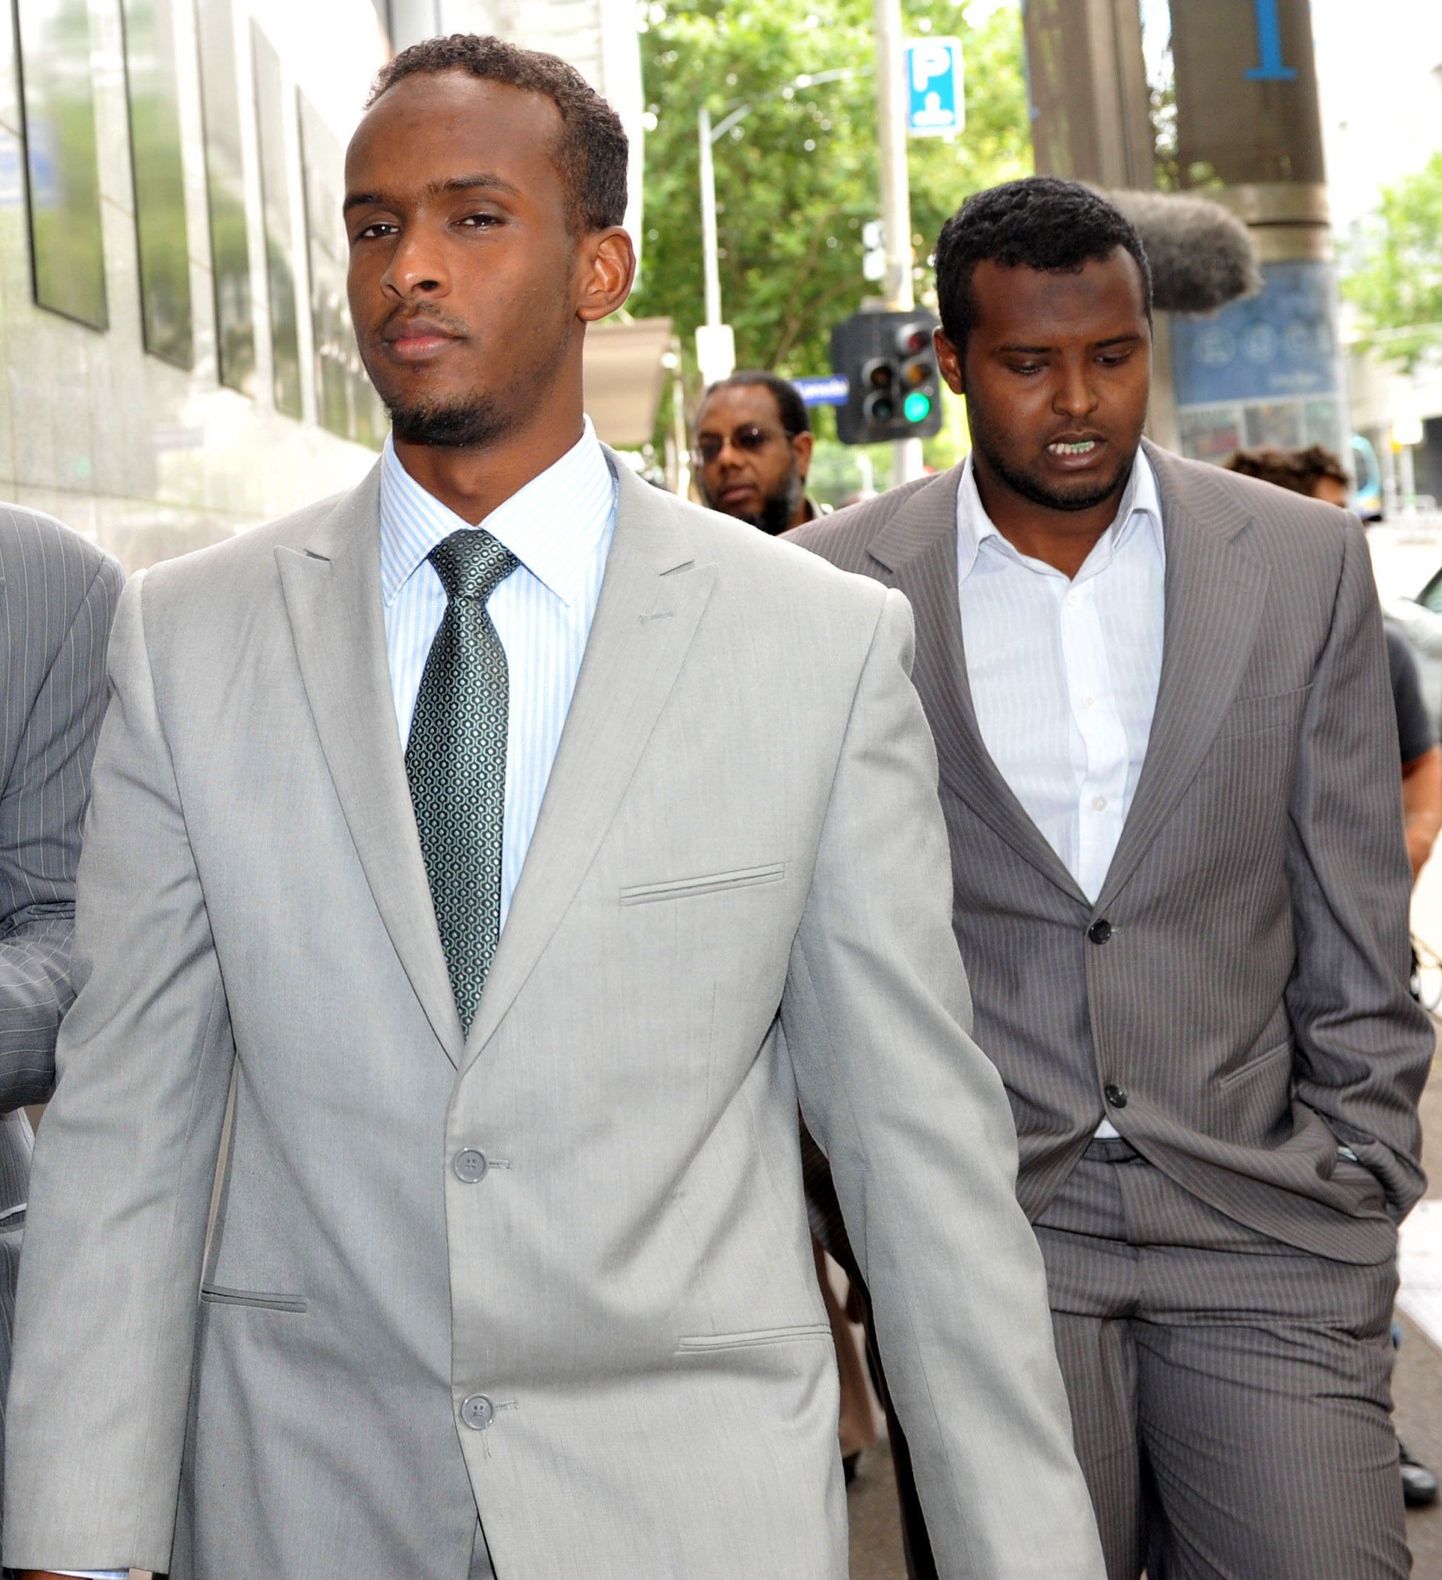 Kohtus mõisteti sama protsessi käigus õigeks Abdirahman Mohamud Ahmed (vasakul) ja Yacqub Khayre.